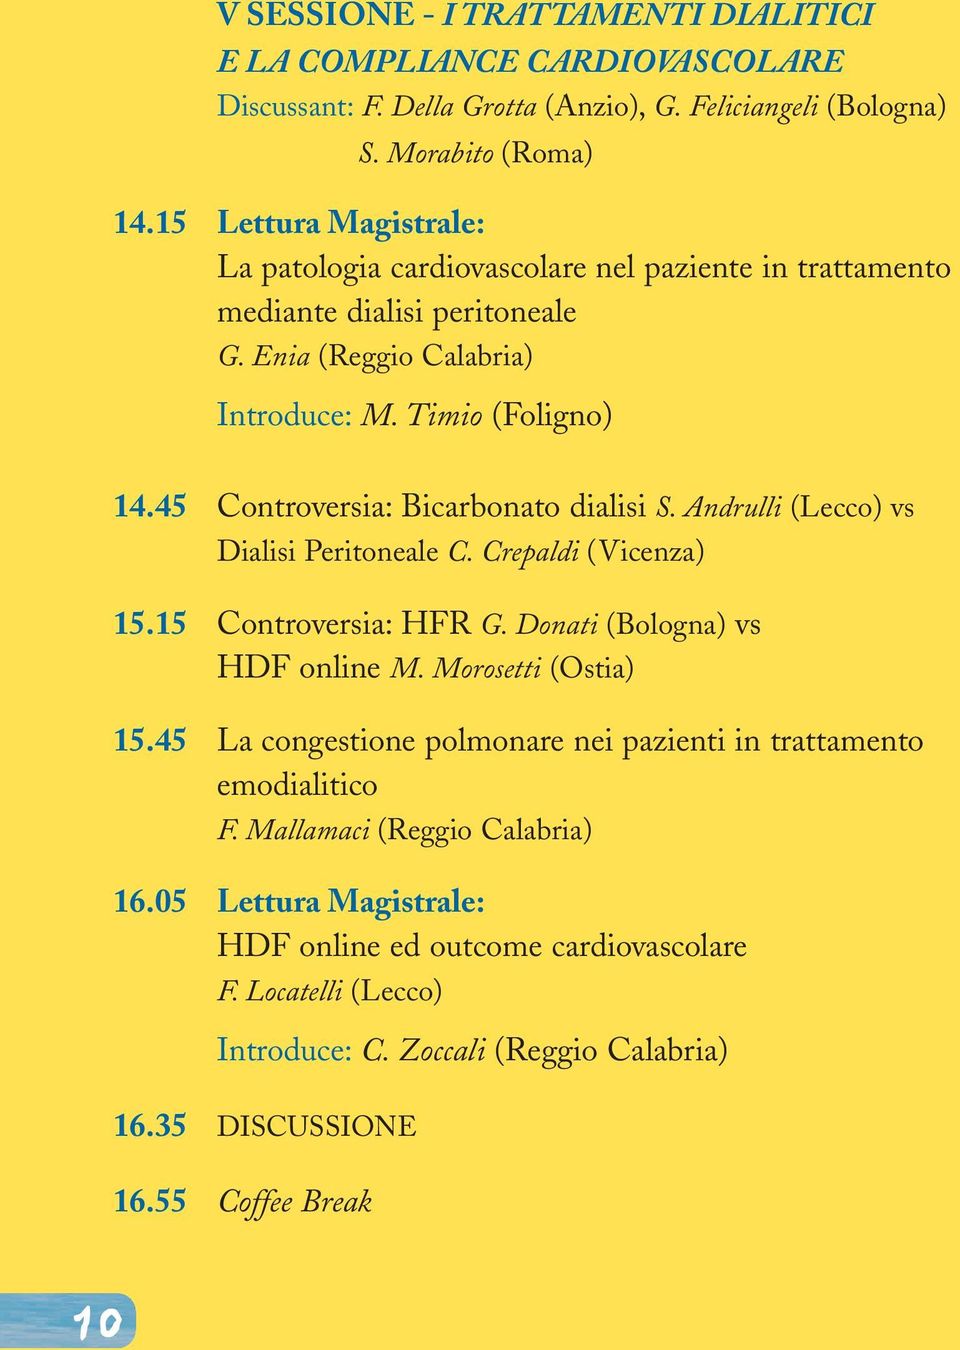 45 Controversia: Bicarbonato dialisi S. Andrulli (Lecco) vs Dialisi Peritoneale C. Crepaldi (Vicenza) 15.15 Controversia: HFR G. Donati (Bologna) vs HDF online M. Morosetti (Ostia) 15.